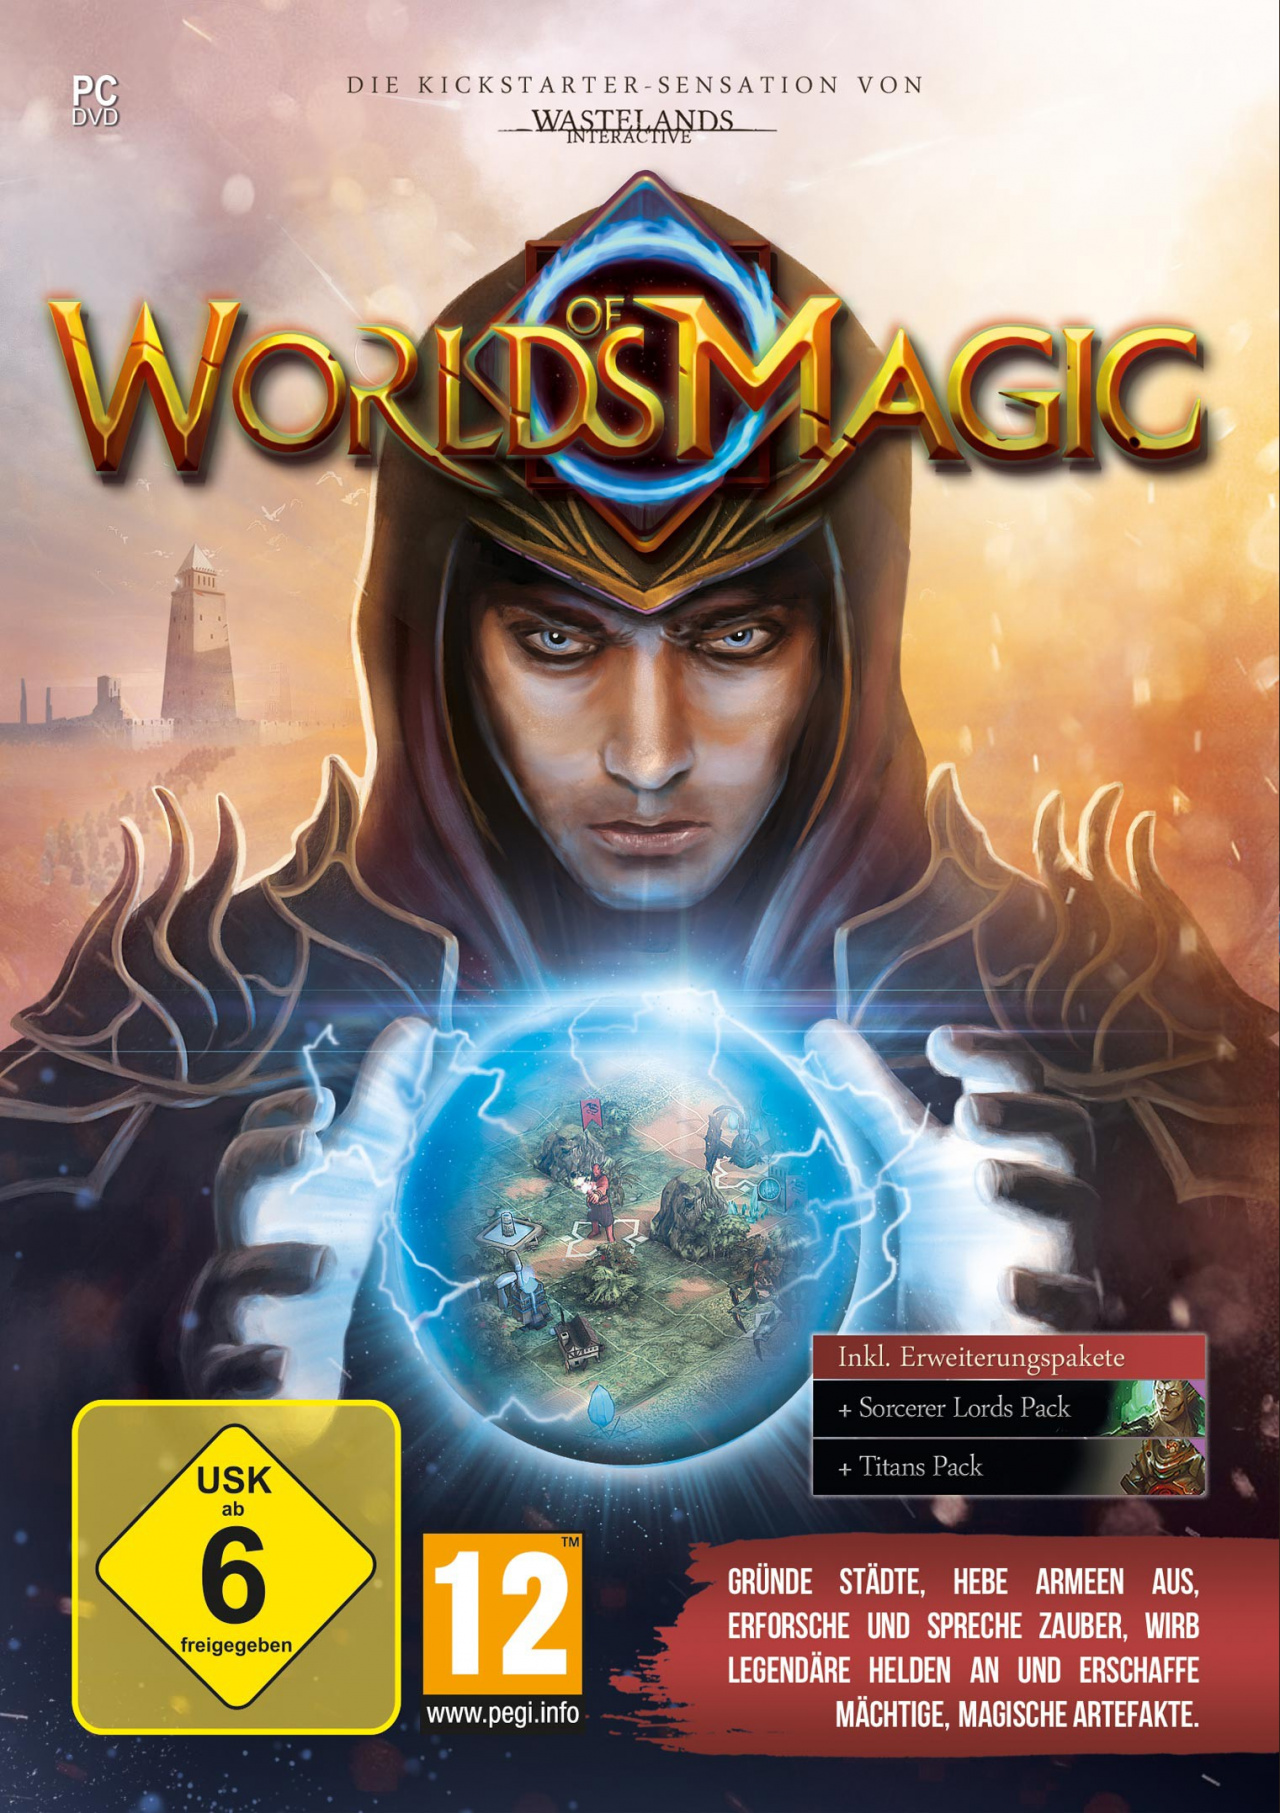 Magic обложка. Worlds of Magic (2015) игра. Магический мир игра. Сфера (игра) обложка. Игры магия на ПК журнал.